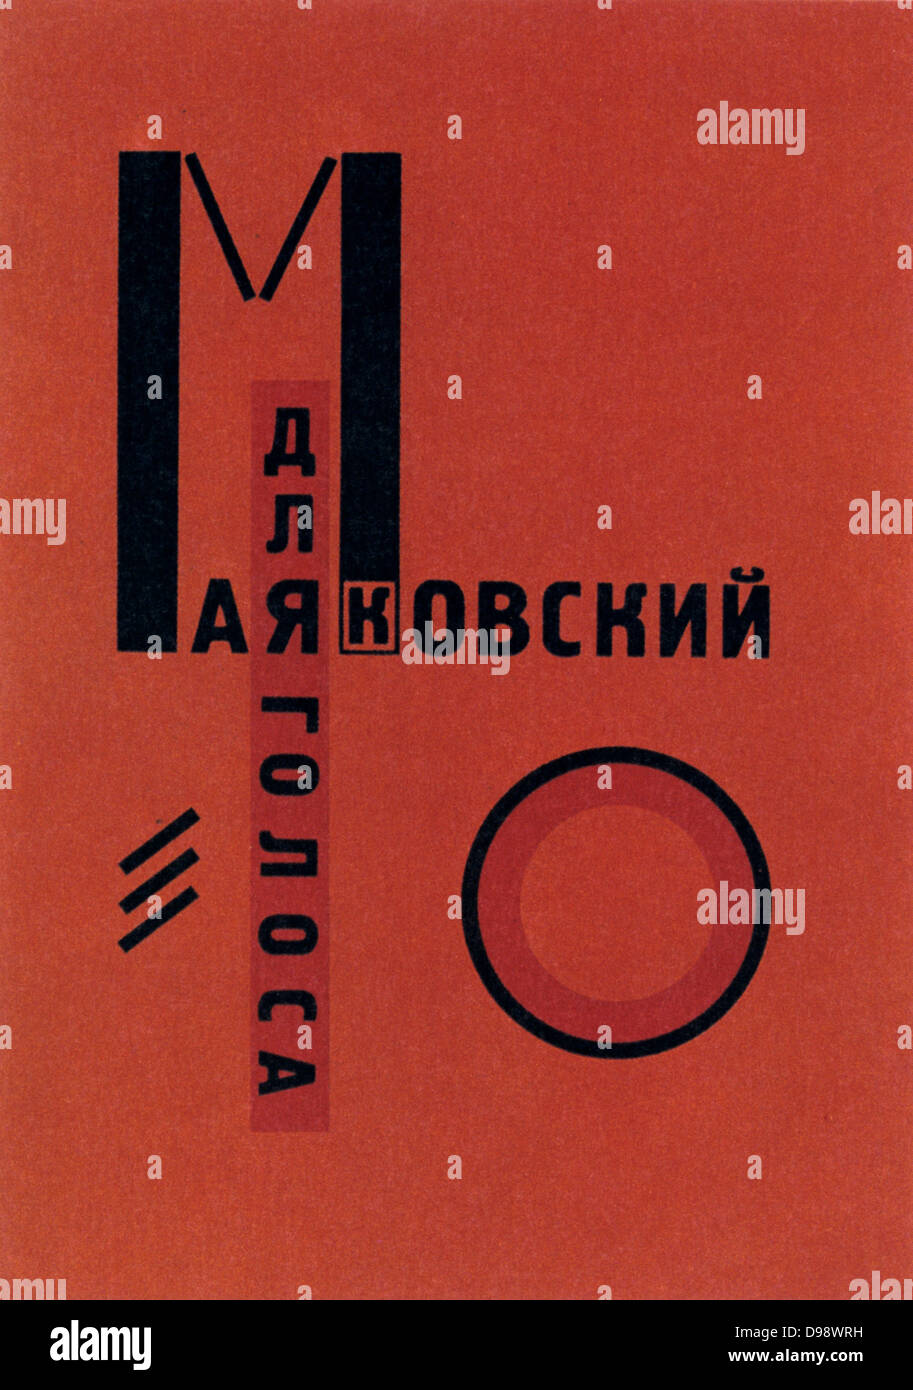 Design von Lazar Lissitzky für das Cover eines Buches von Wladimir Majakowski, 1923. Russland UDSSR Kommunismus Kommunistische geometrischen Abstrakten Stockfoto